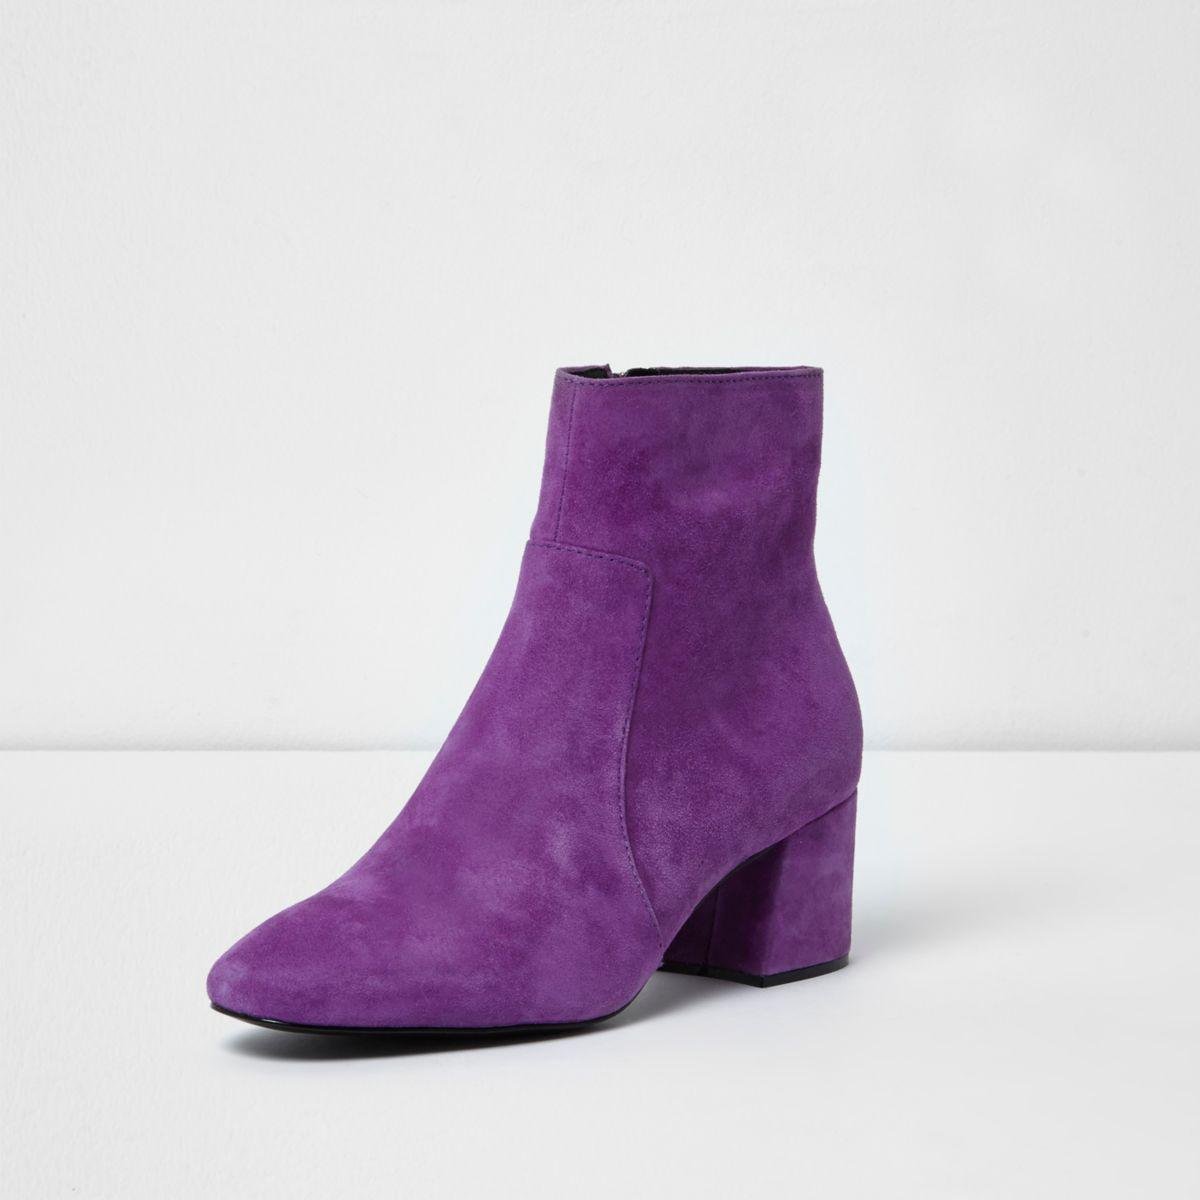 Lyst - River Island Purple Block Heel Suede Ankle Boots in Purple